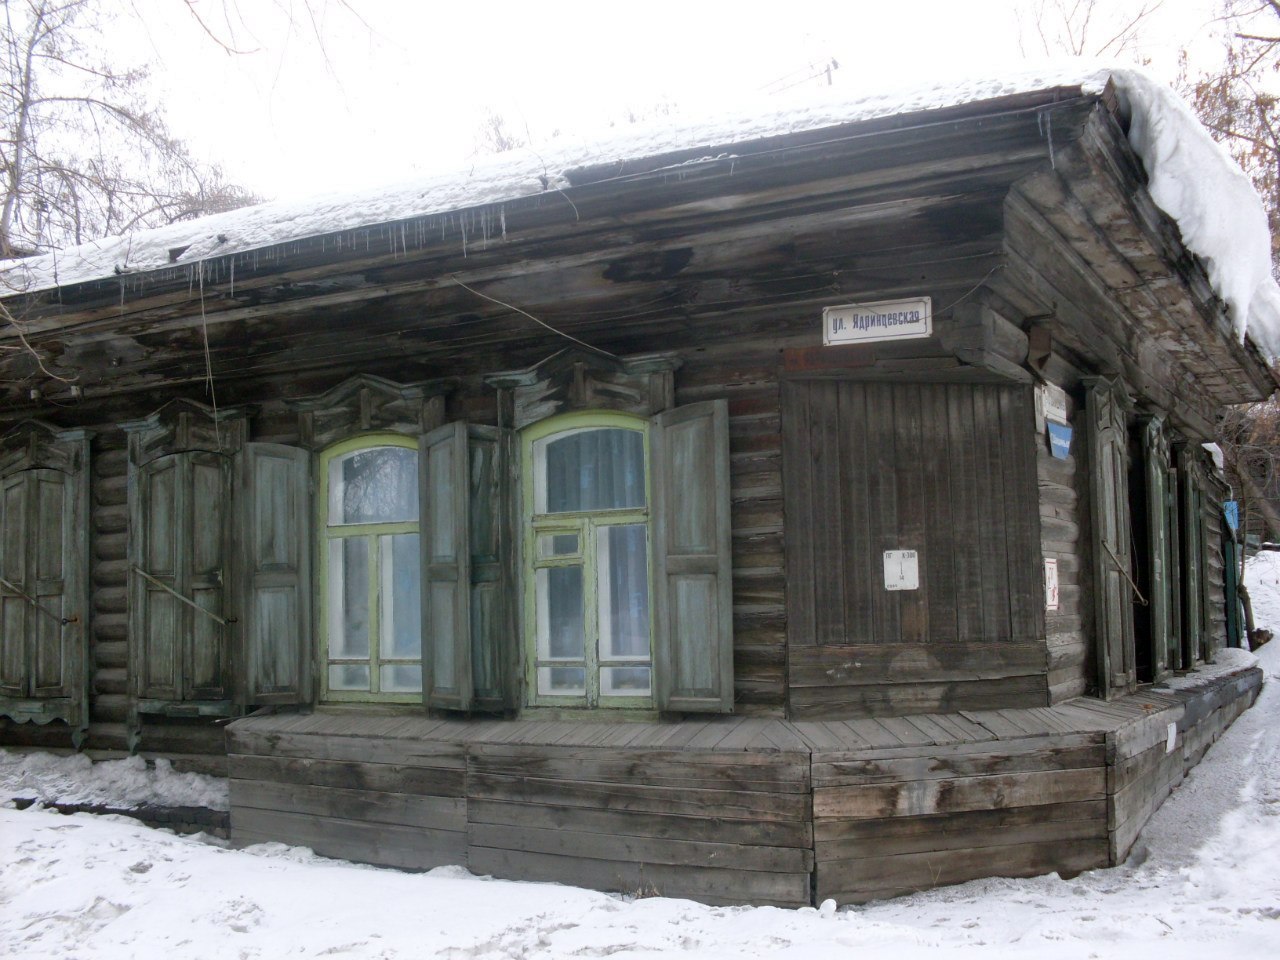  Деревянный дом Янки в Новосибирске по адресу Ядринцевская, 61. Источник: journal.n1.ru